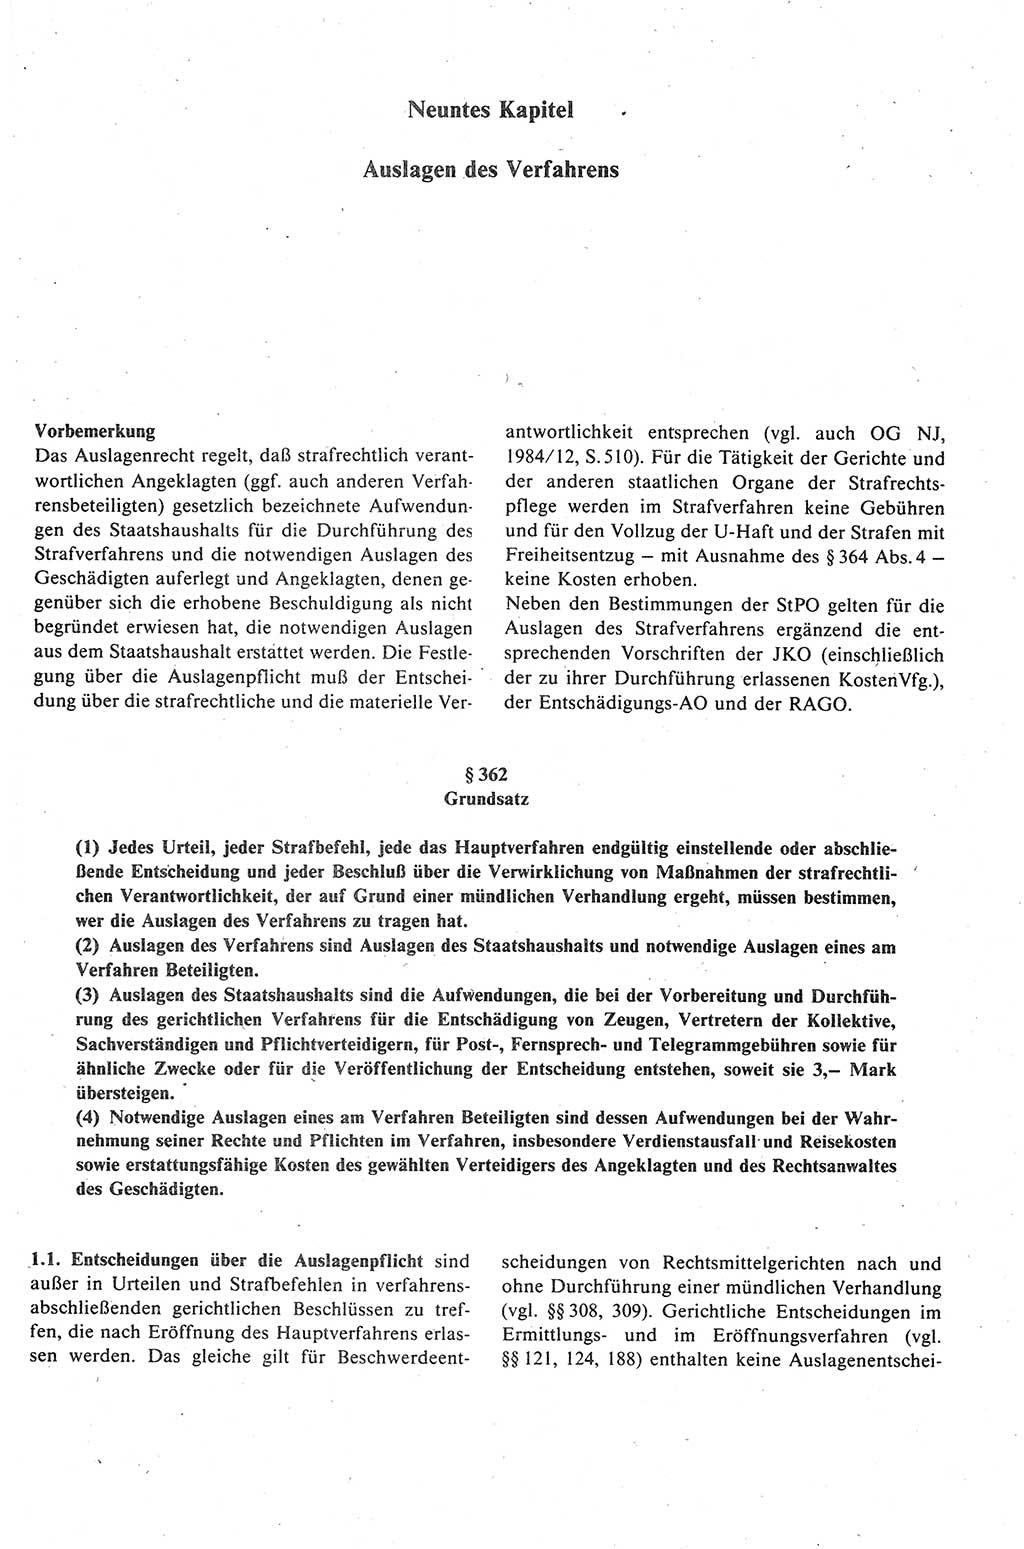 Strafprozeßrecht der DDR (Deutsche Demokratische Republik), Kommentar zur Strafprozeßordnung (StPO) 1989, Seite 419 (Strafprozeßr. DDR Komm. StPO 1989, S. 419)